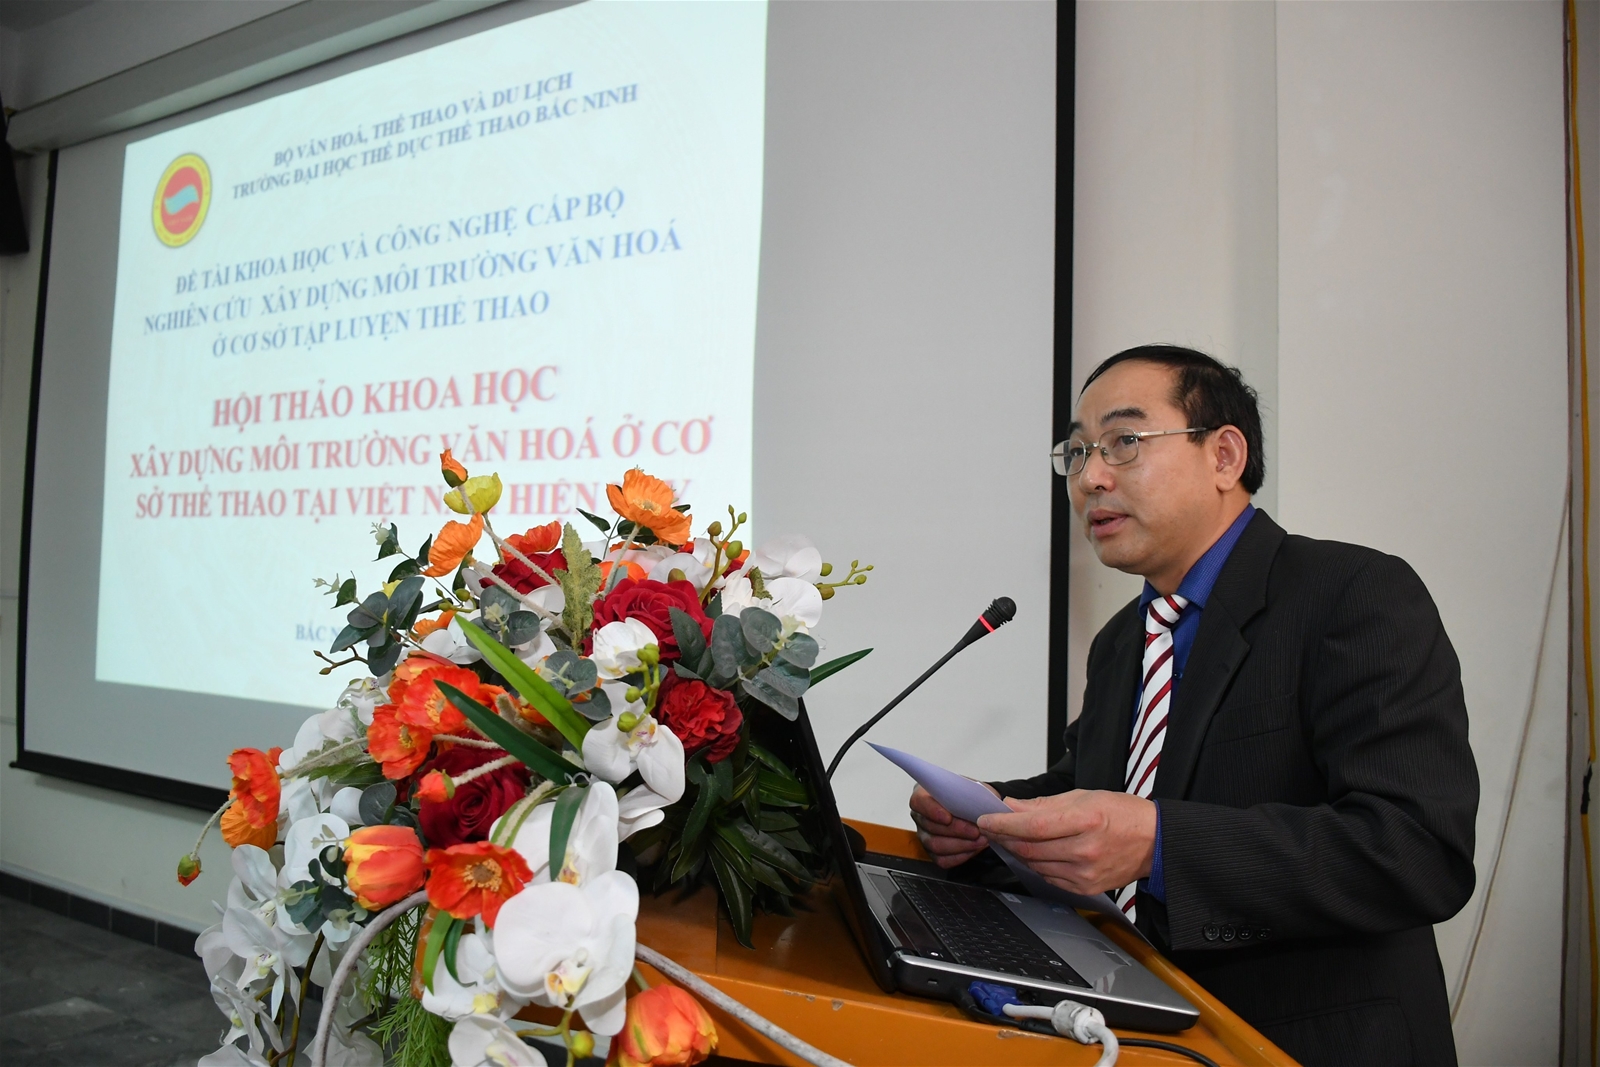 Trường Đại học Thể dục thể thao Bắc Ninh tổ chức thành công Hội thảo khoa học “Xây dựng môi trường văn hóa cơ sở tập luyện thể thao”